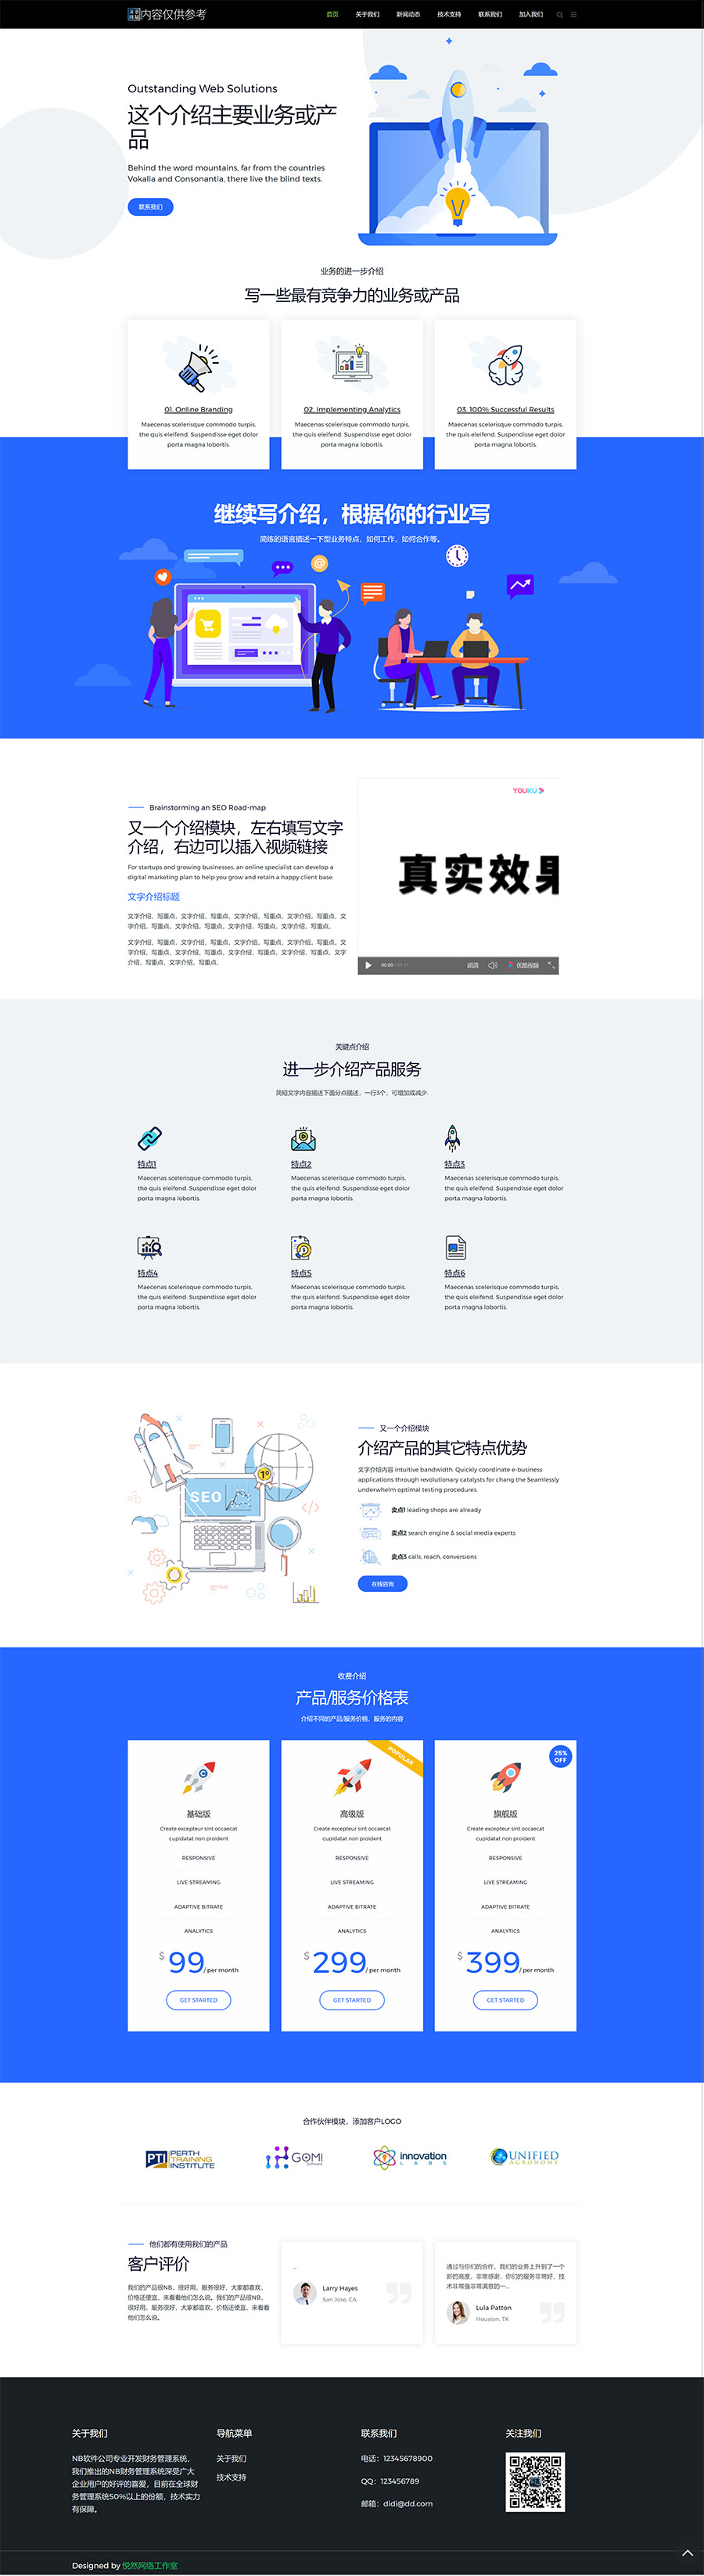 SL系列企业网站模板介绍-悦然建站